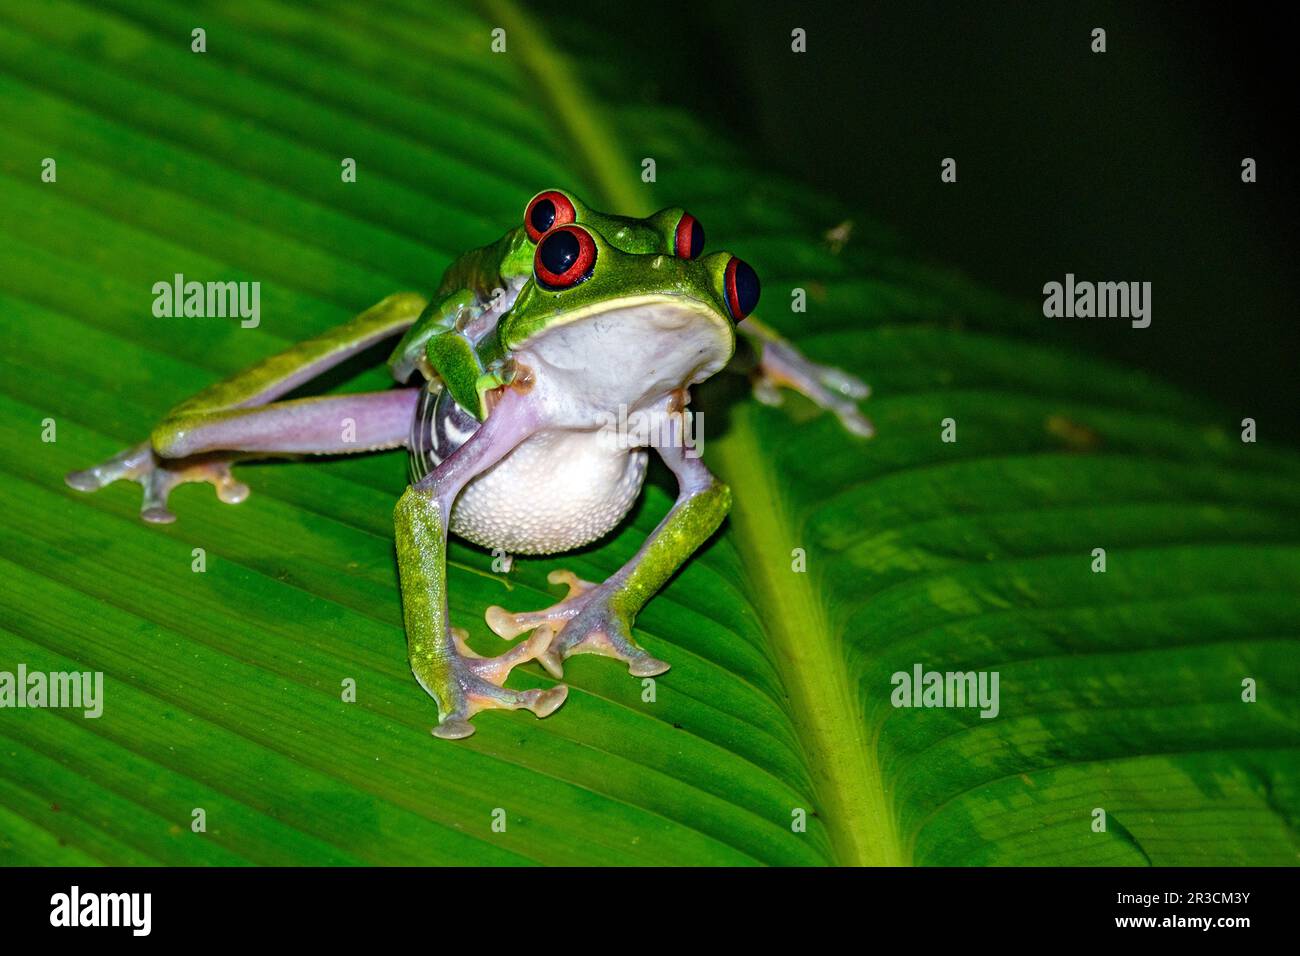 L'accouplement des grenouilles d'arbres à yeux rouges (Agalychnis callidryas). Photo du parc national de Piedras Blancas, péninsule d'Osa, Costa Rica. Banque D'Images